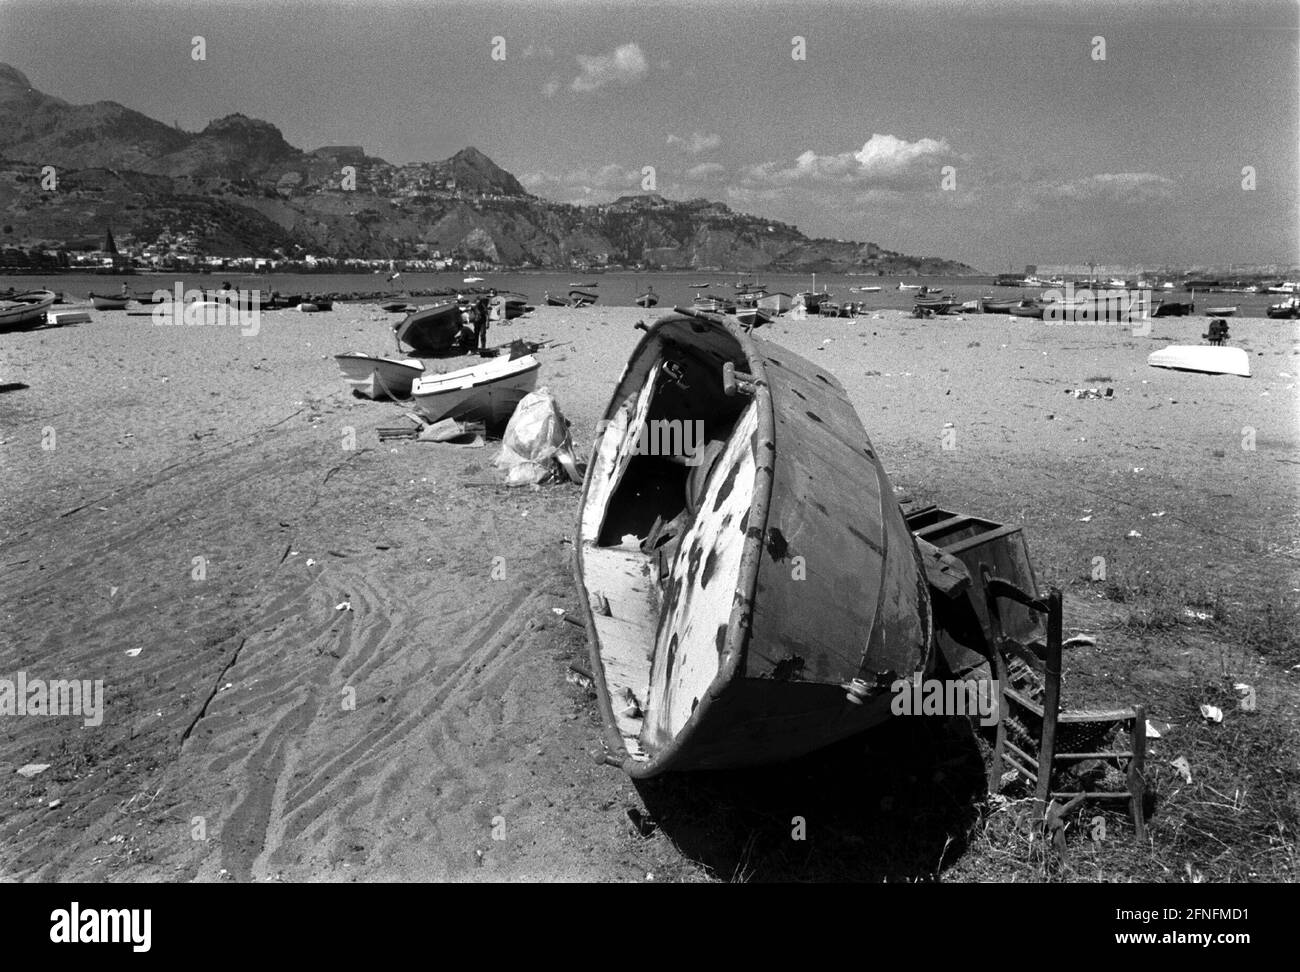 Boats on the promenade at Giardini Naxos beach, Italy, Sicily, 26.05.1999, [automated translation] Stock Photo